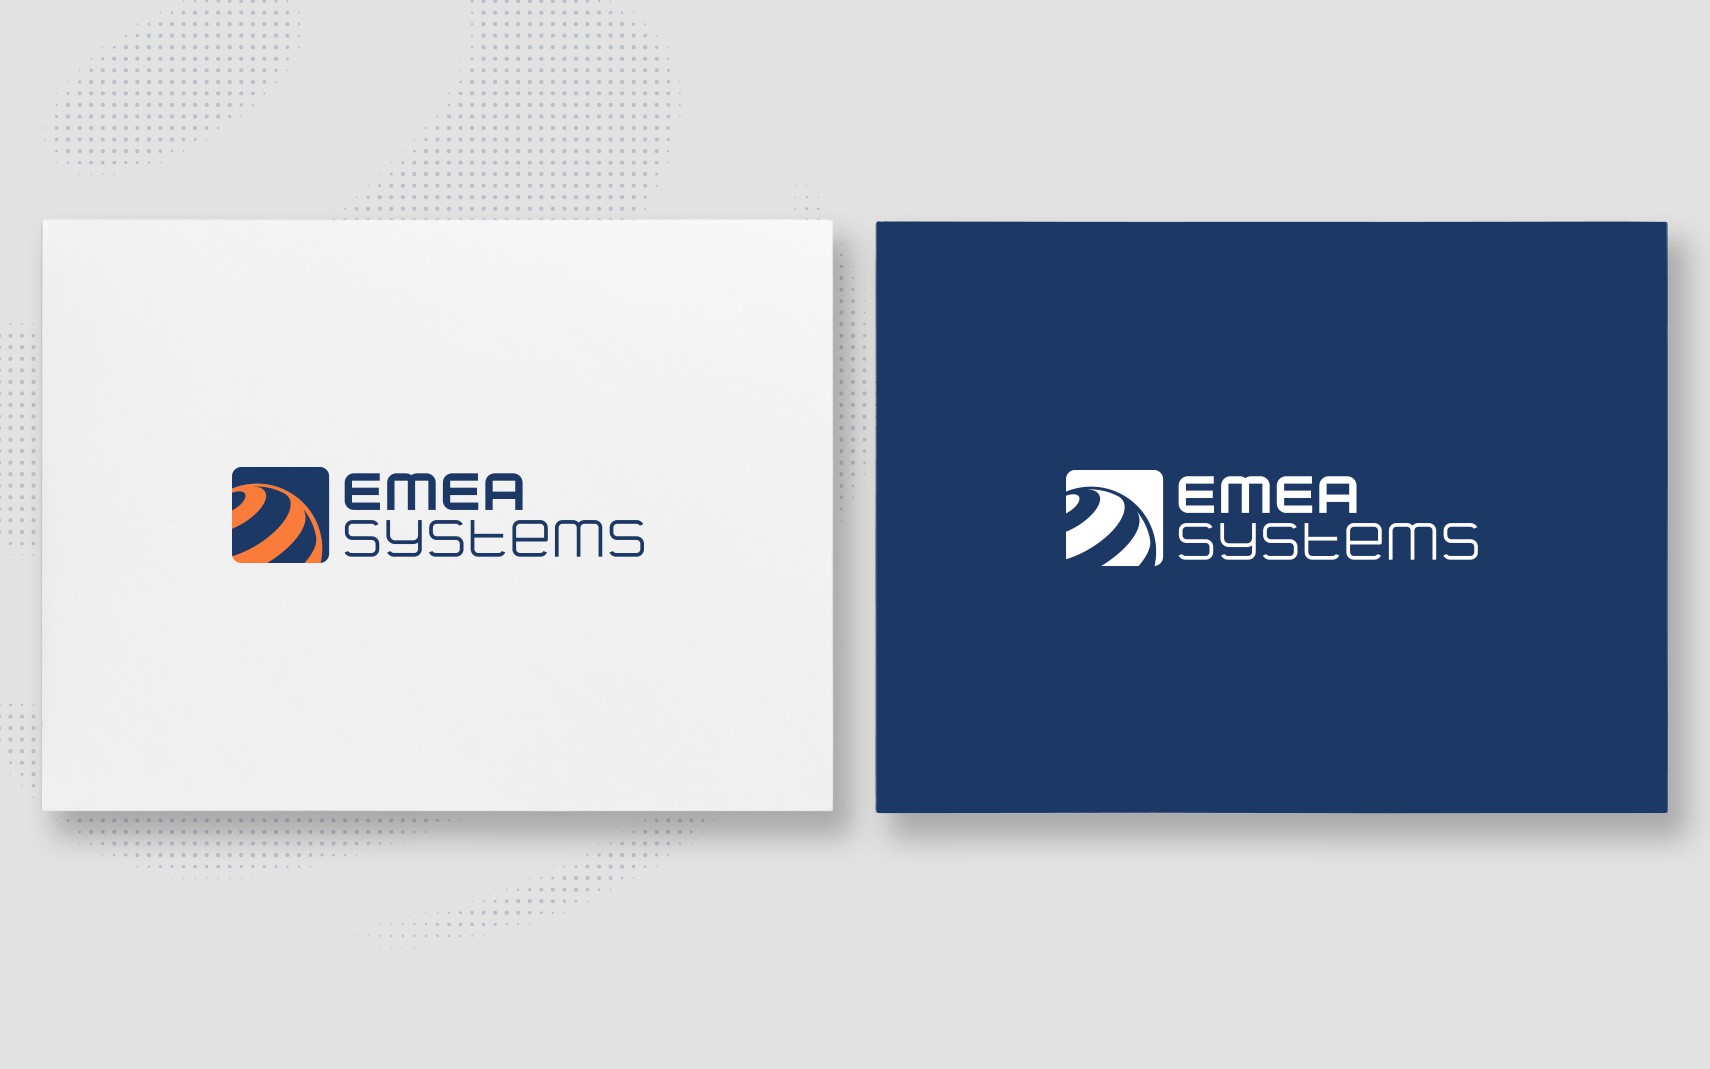 EMEA Systems